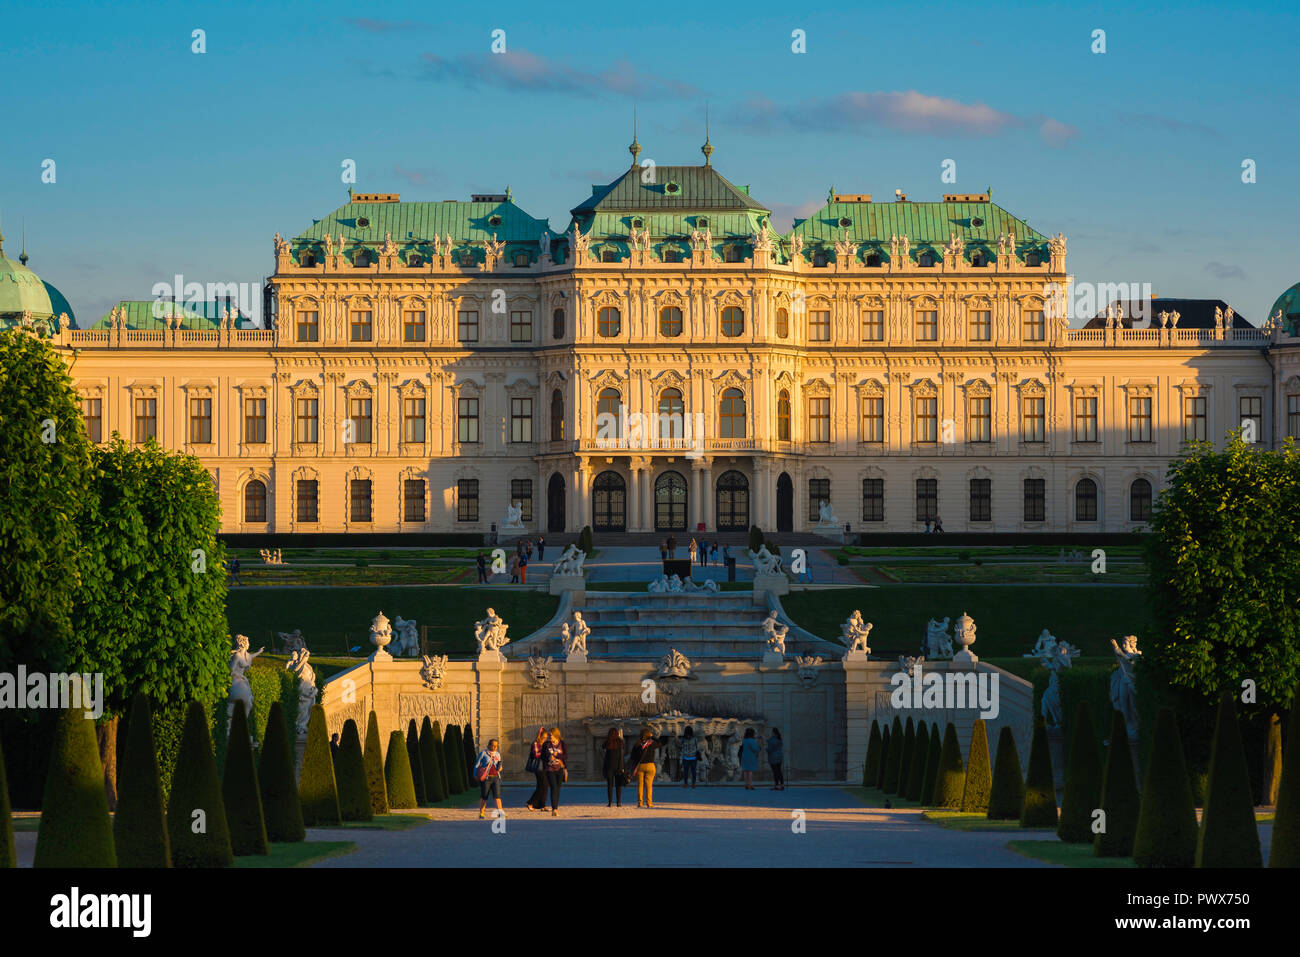 Belvedere Wien, Panoramablick an einem Sommerabend, an dem Menschen in den Gärten des Schlosses Belvedere - Schloss Belvedere - Wien, Österreich, spazieren gehen. Stockfoto